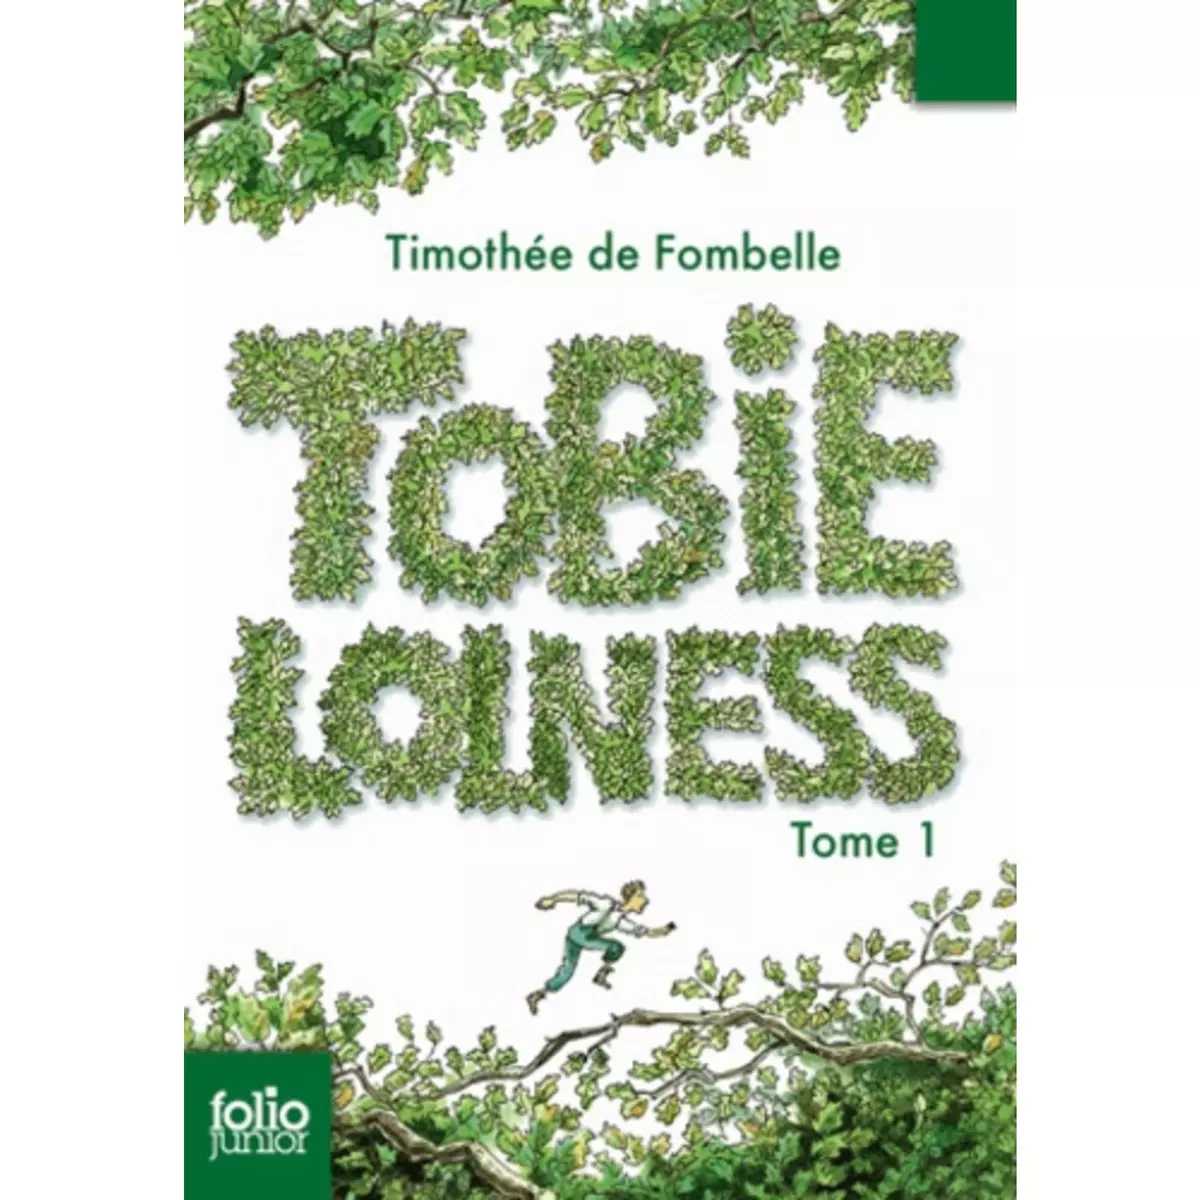  TOBIE LOLNESS TOME 1 : LA VIE SUSPENDUE, Fombelle Timothée de